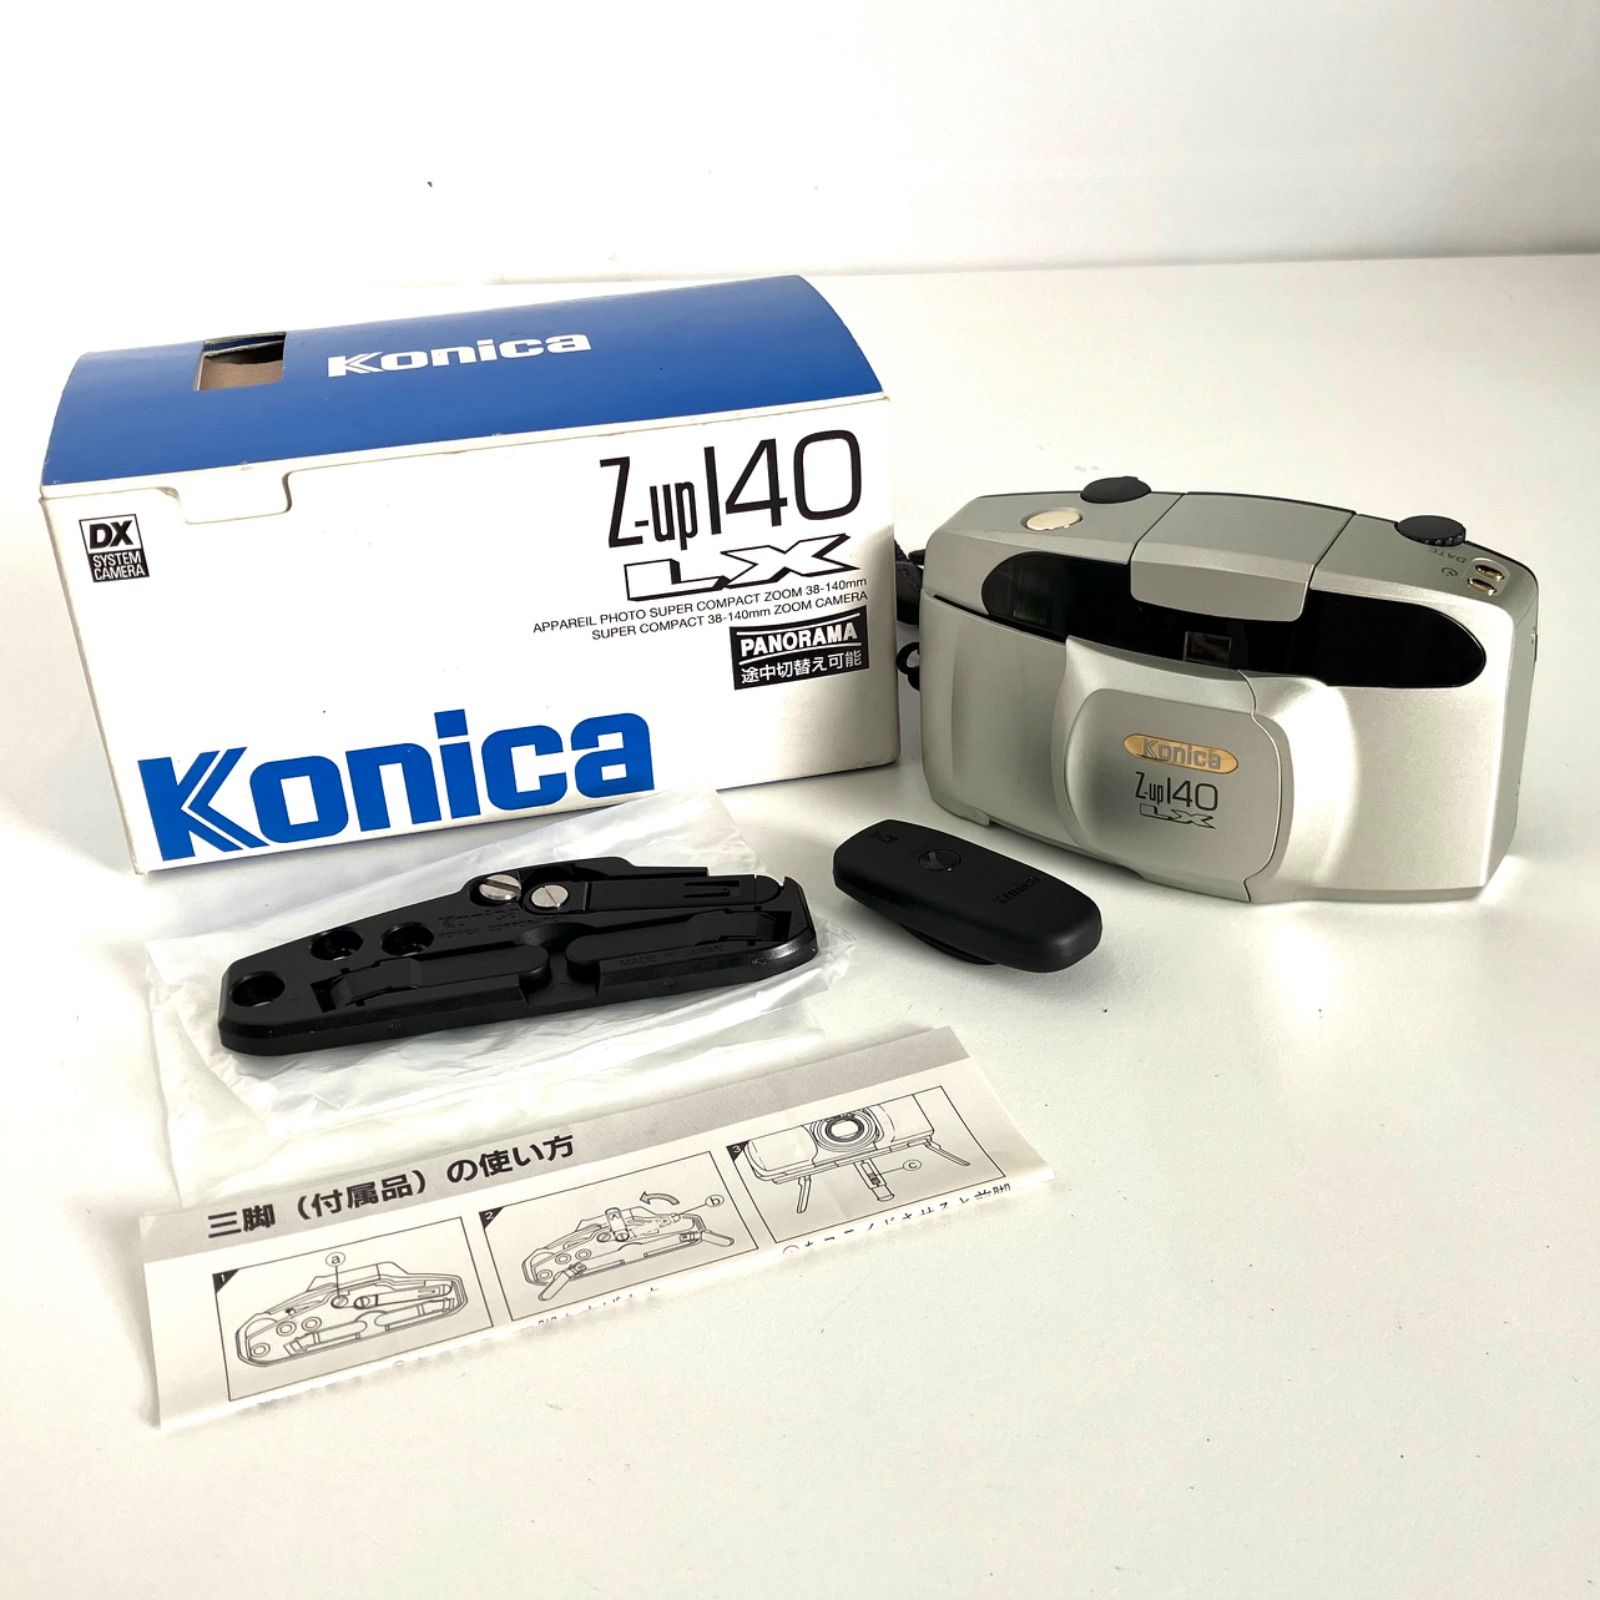 KONICA Z-up140LX (フィルムカメラ) - フィルムカメラ